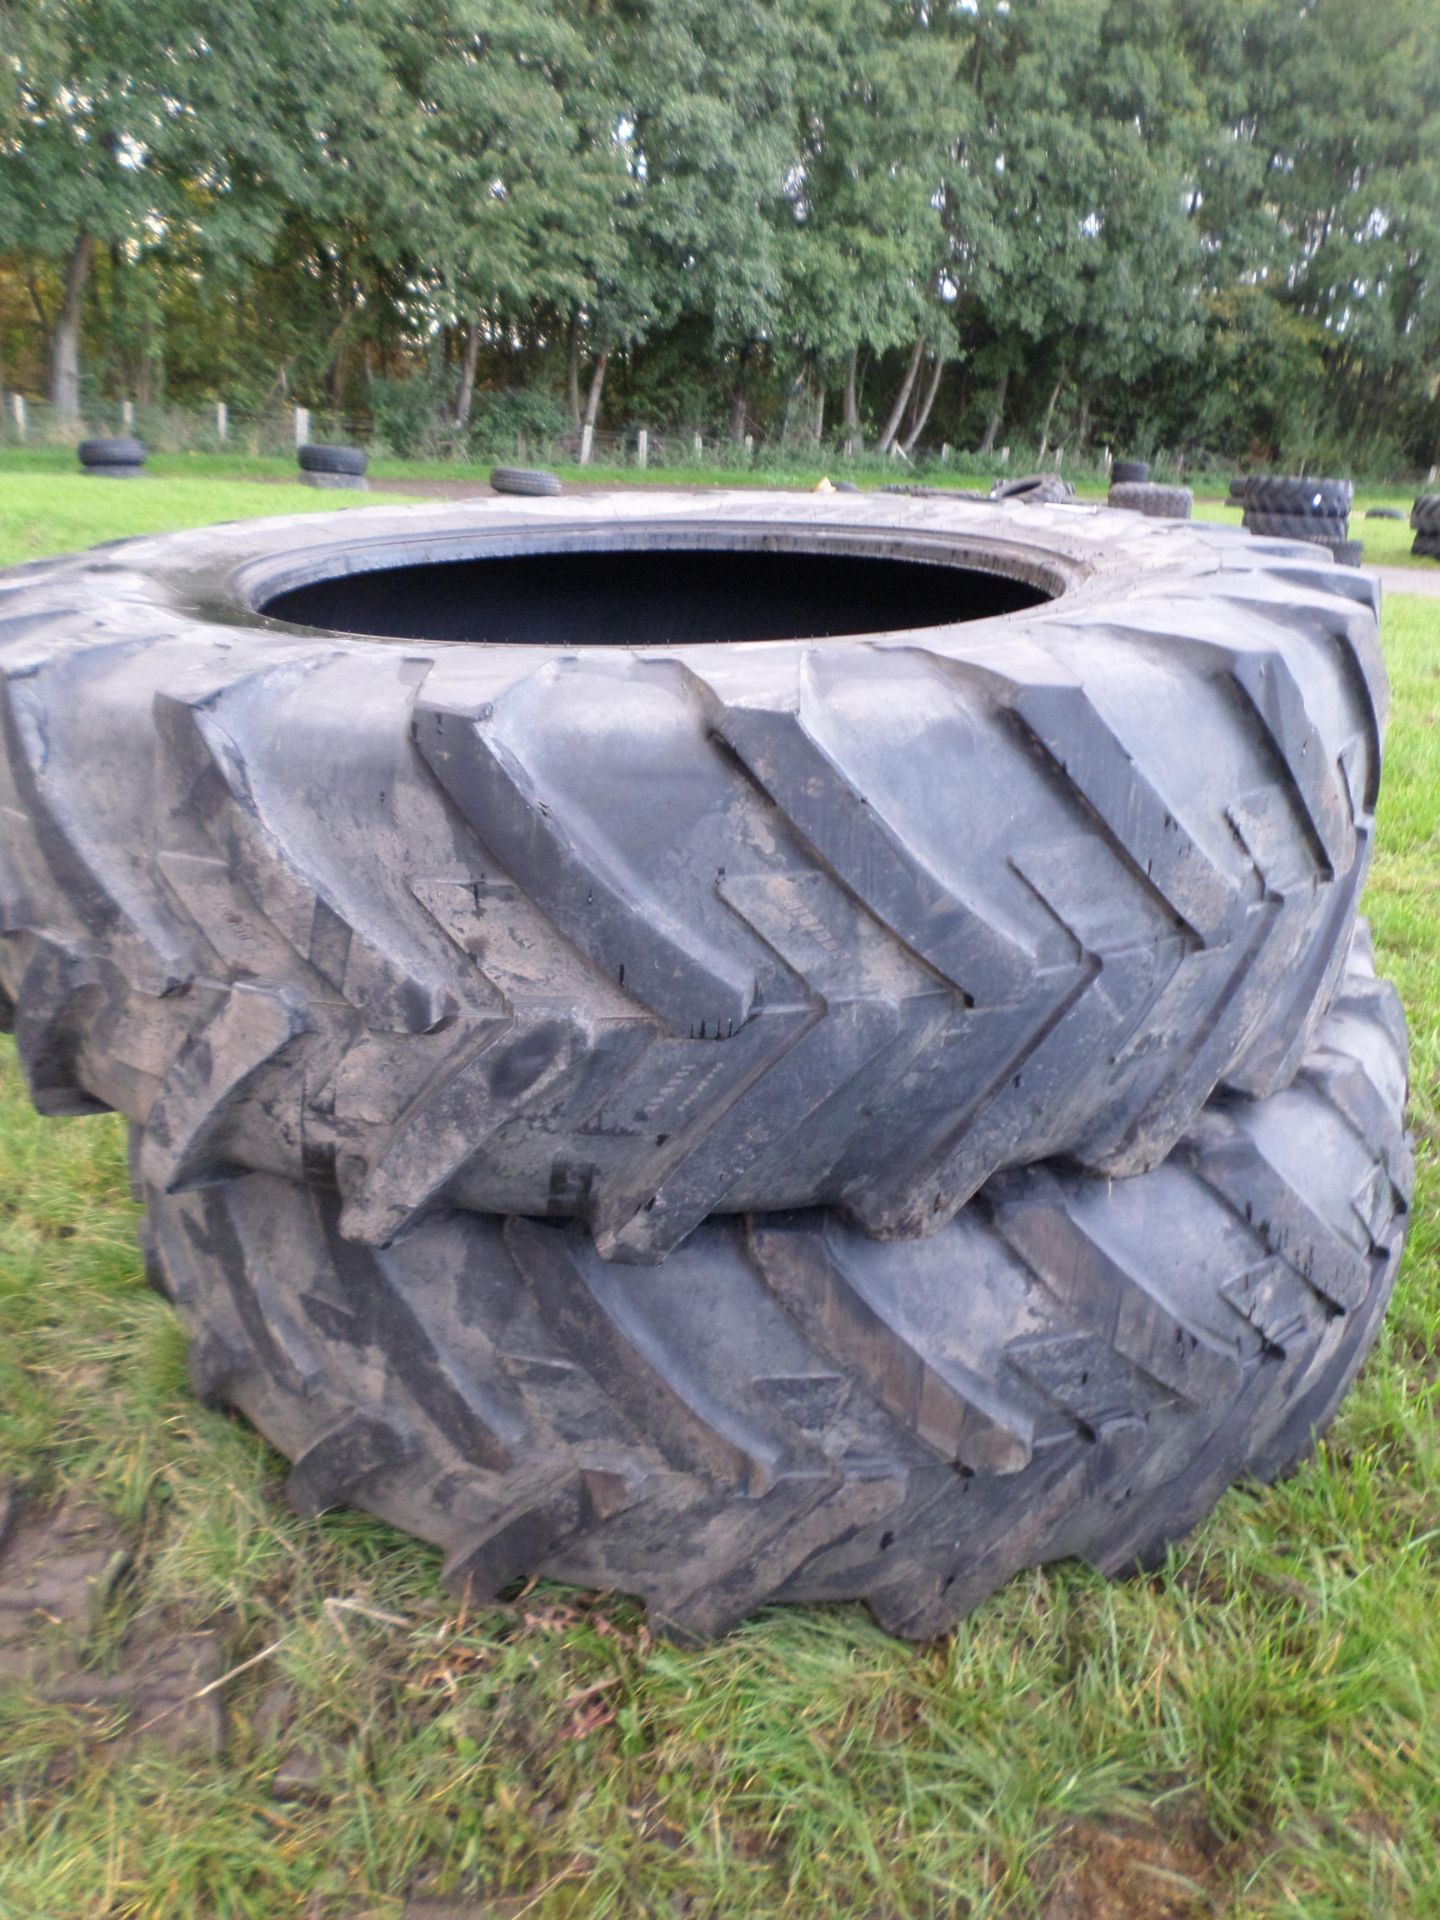 Pair of dual wheel tyres 20.8/42 - Image 3 of 3